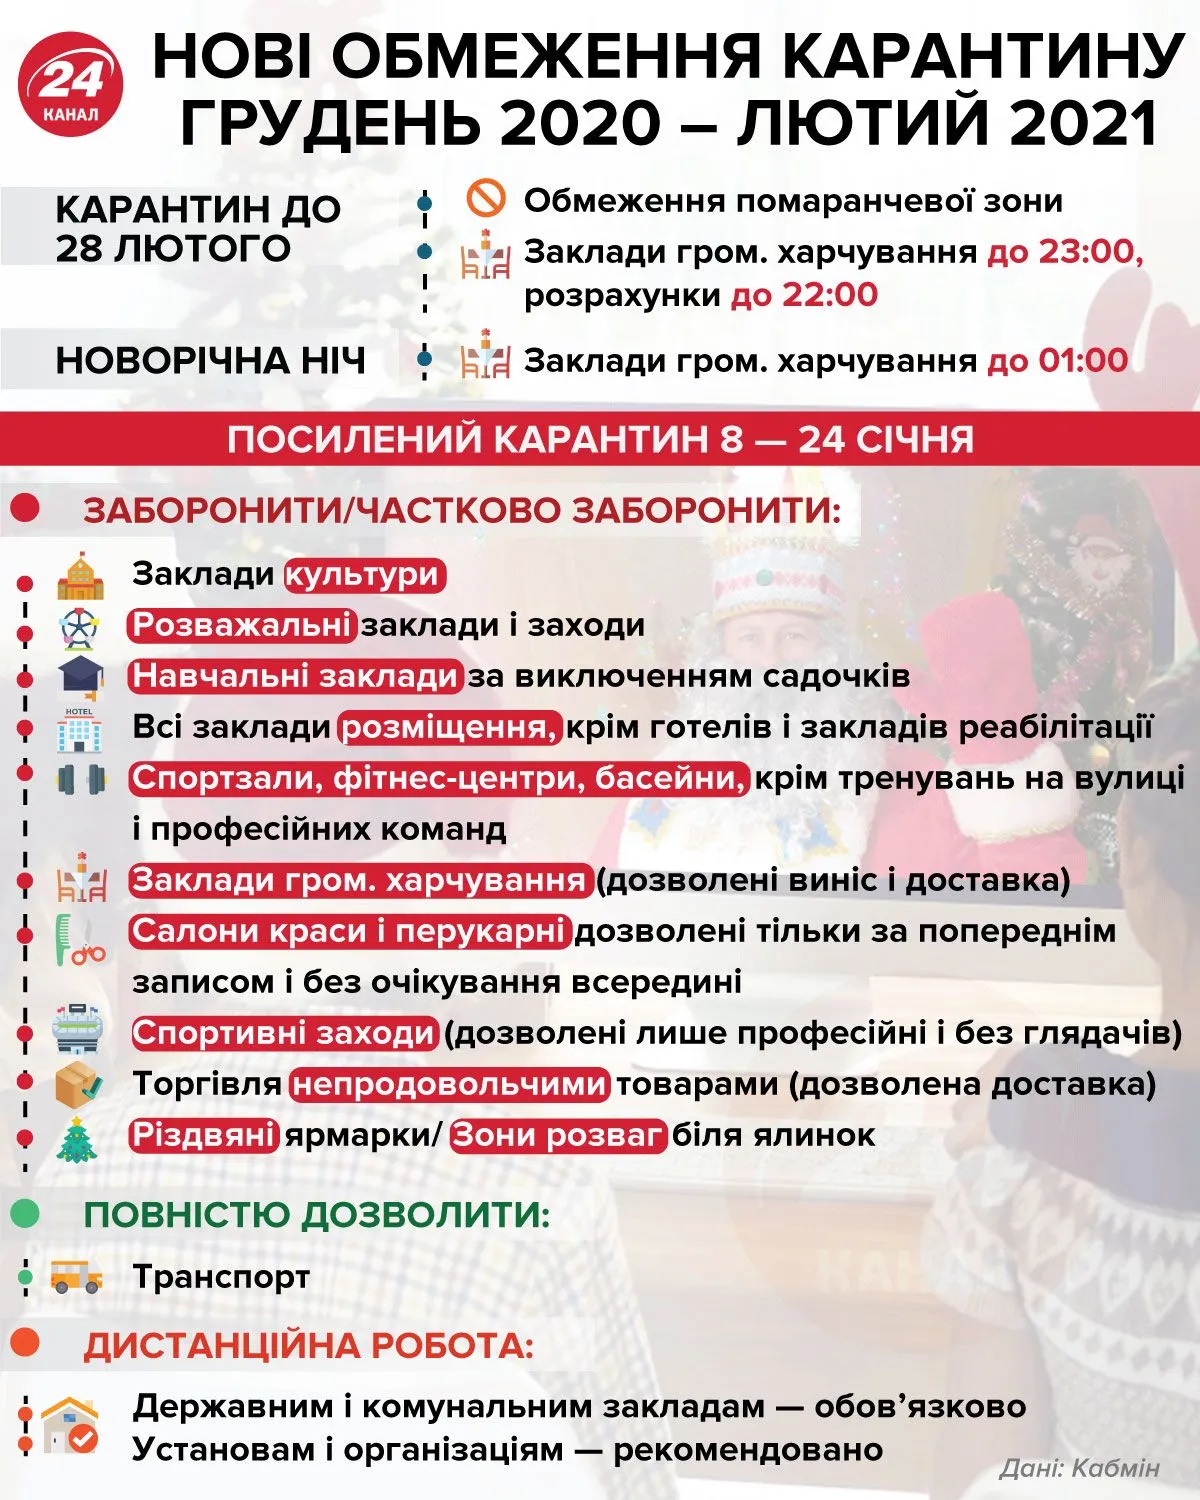 Новые ограничения карантина в Украине Инфографика 24 канала